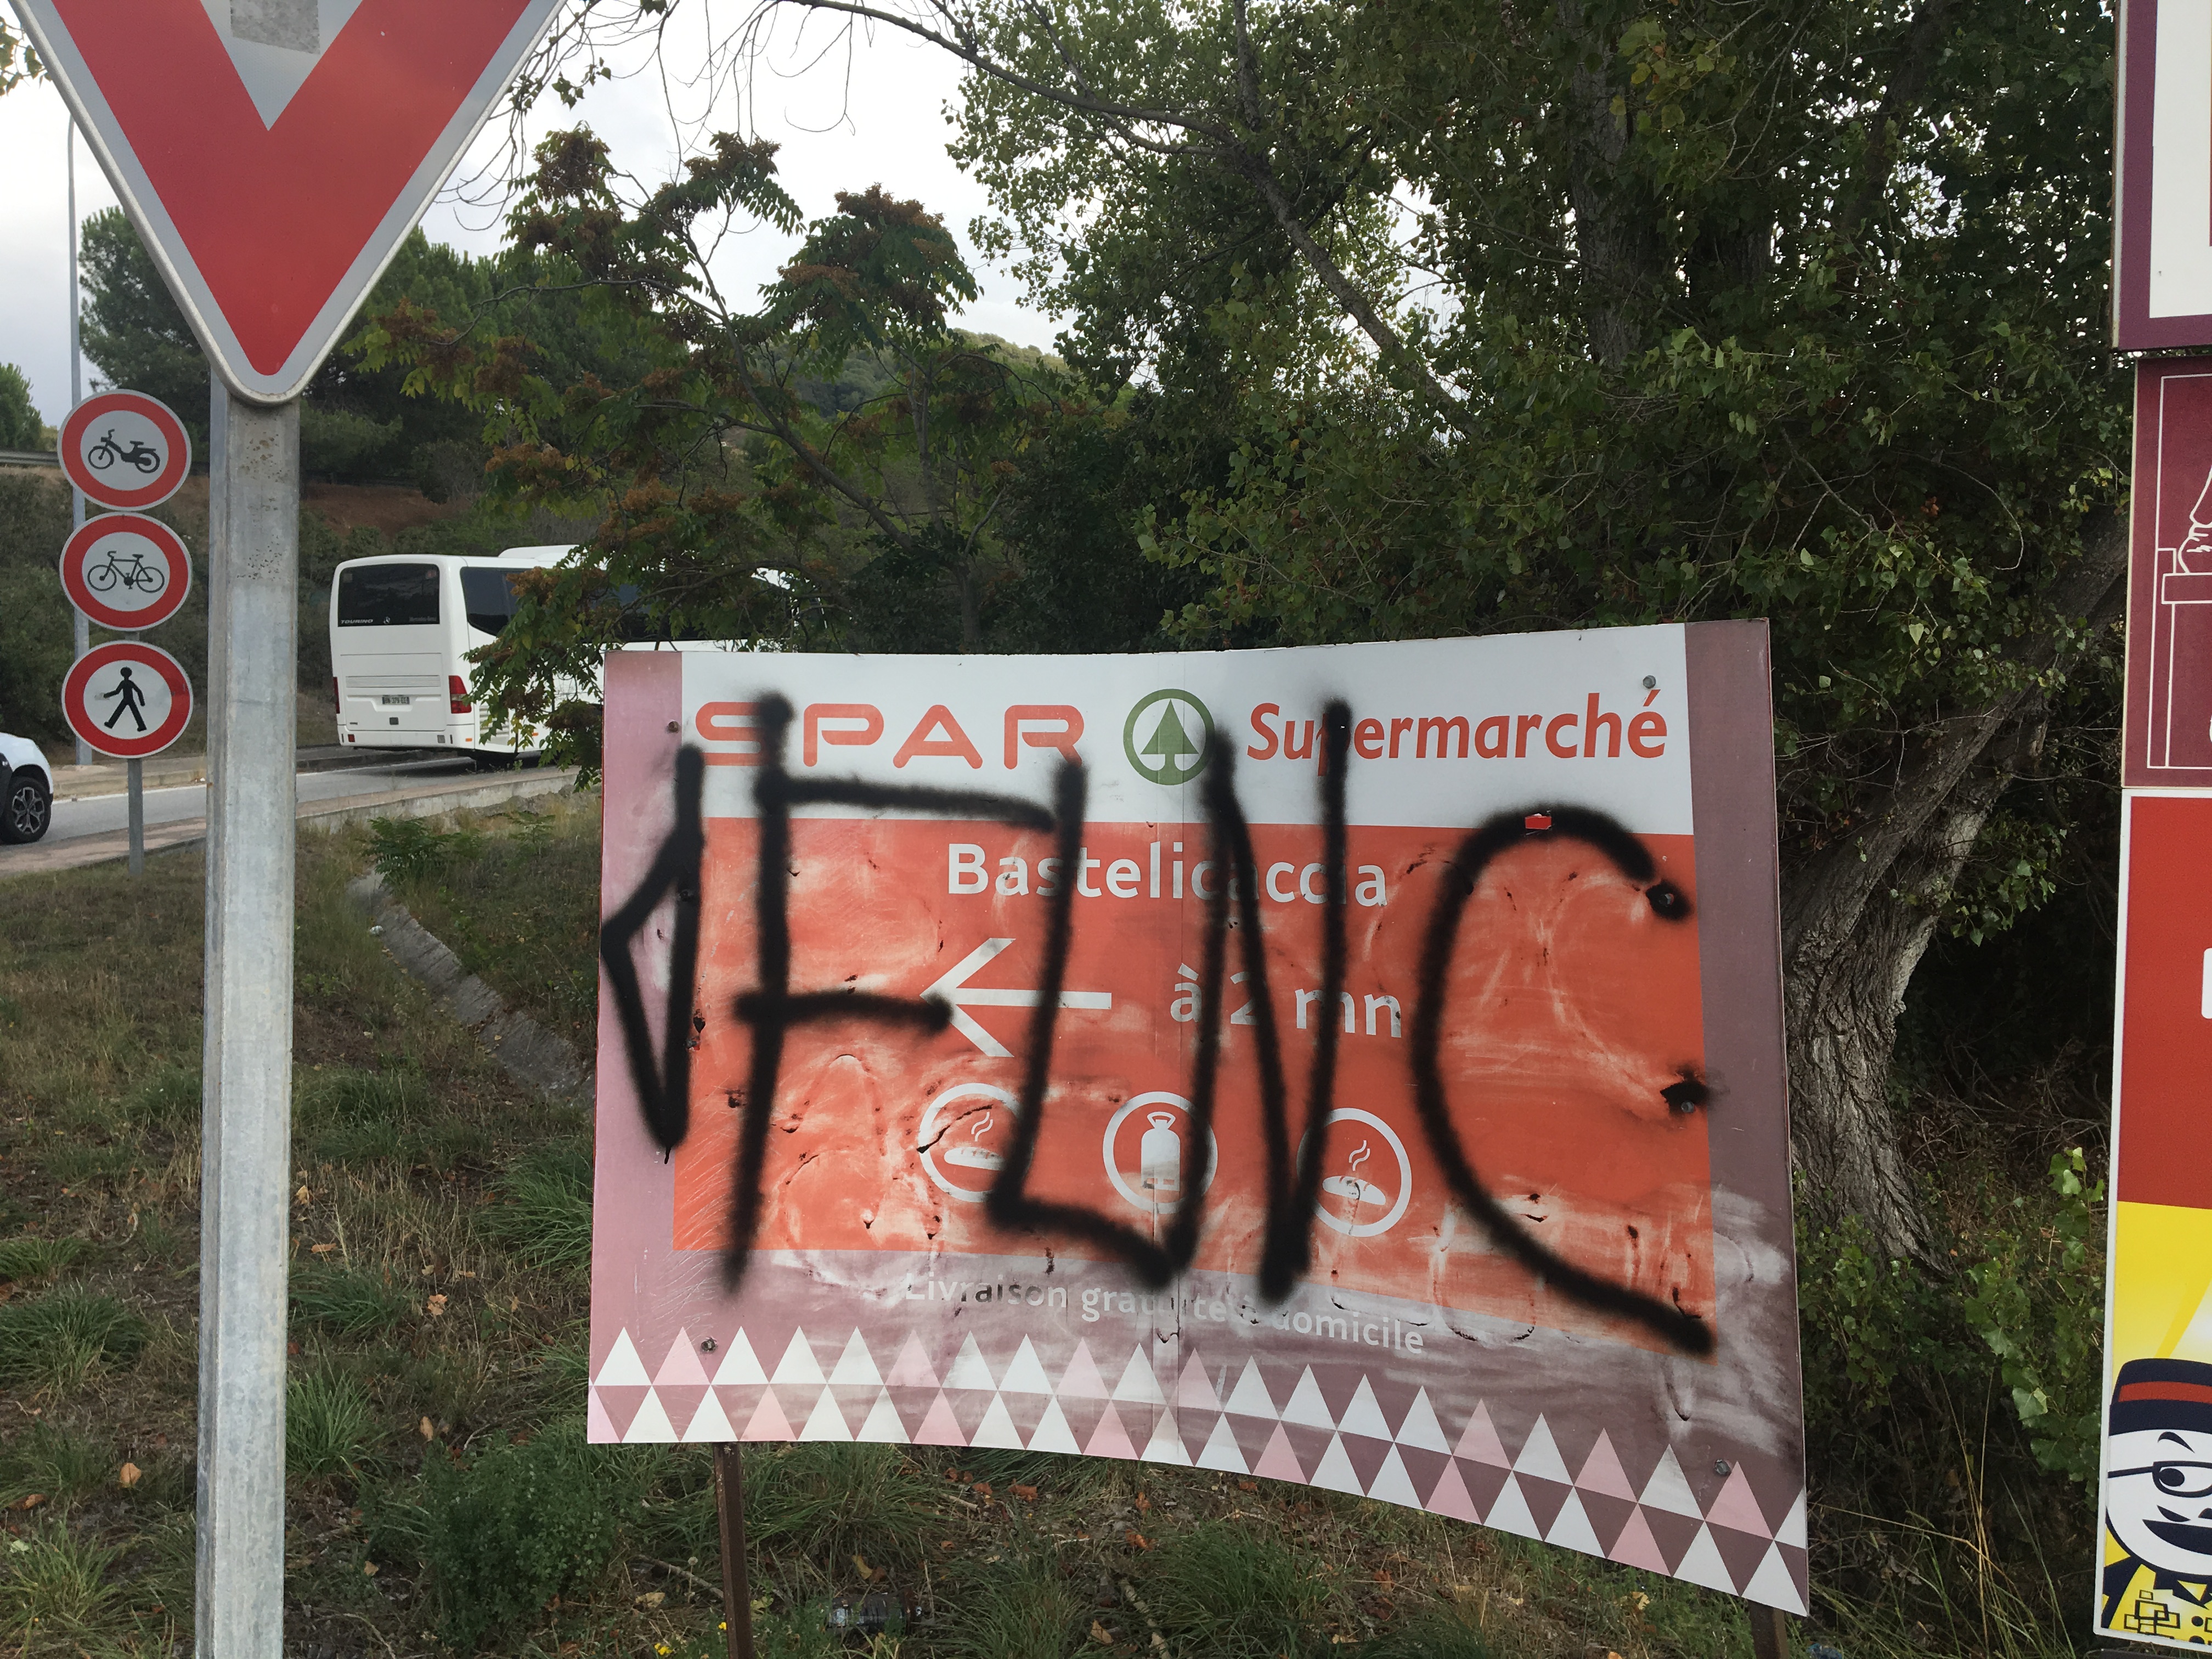 Bastelicaccia : Tirs et inscriptions menaçantes contre un commerce